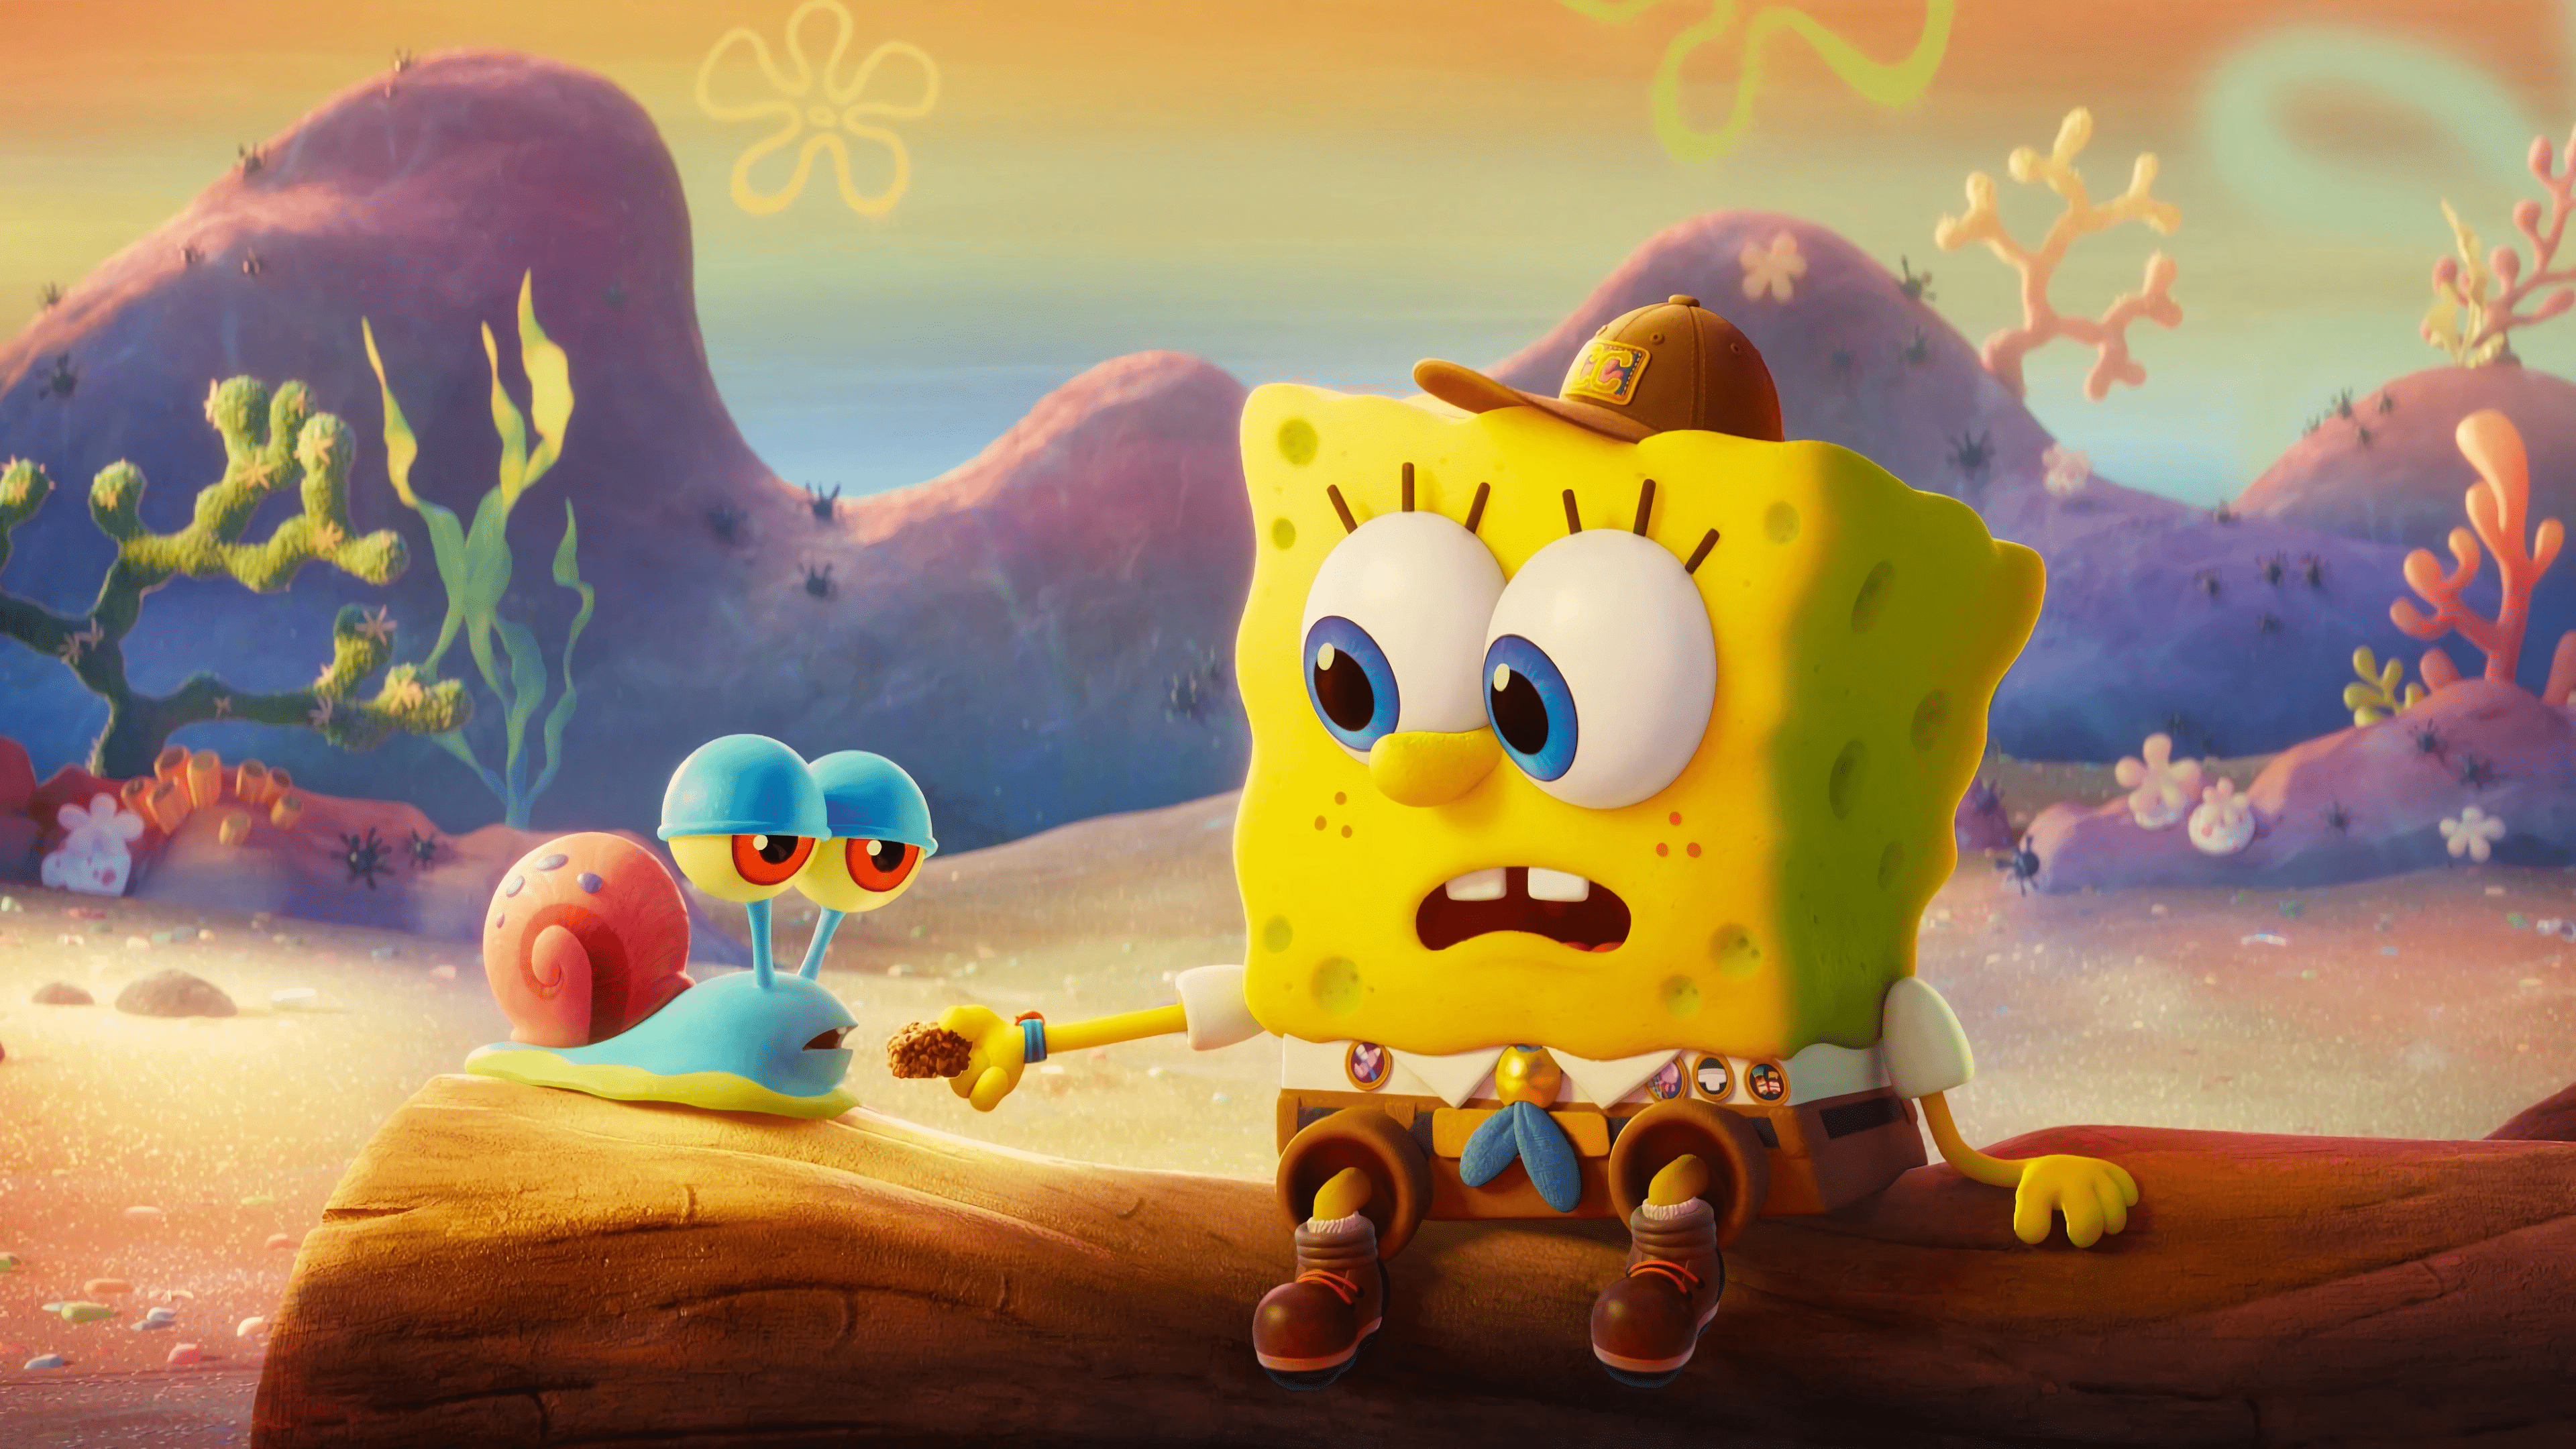 Spongebob 4K Wallpapers: Bạn đang tìm kiếm một hình nền hoạt hình đủ sắc nét và đẹp để tùy chỉnh cho thiết bị của mình? Đừng tiếc nuối khi bỏ lỡ bộ sưu tập Spongebob 4K Wallpapers với độ phân giải cao vượt trội. Hãy xem hình liên quan để khám phá thêm những bức hình hoạt hình đẹp nhất và lựa chọn cho mình một bức tranh nền độc đáo nhất.